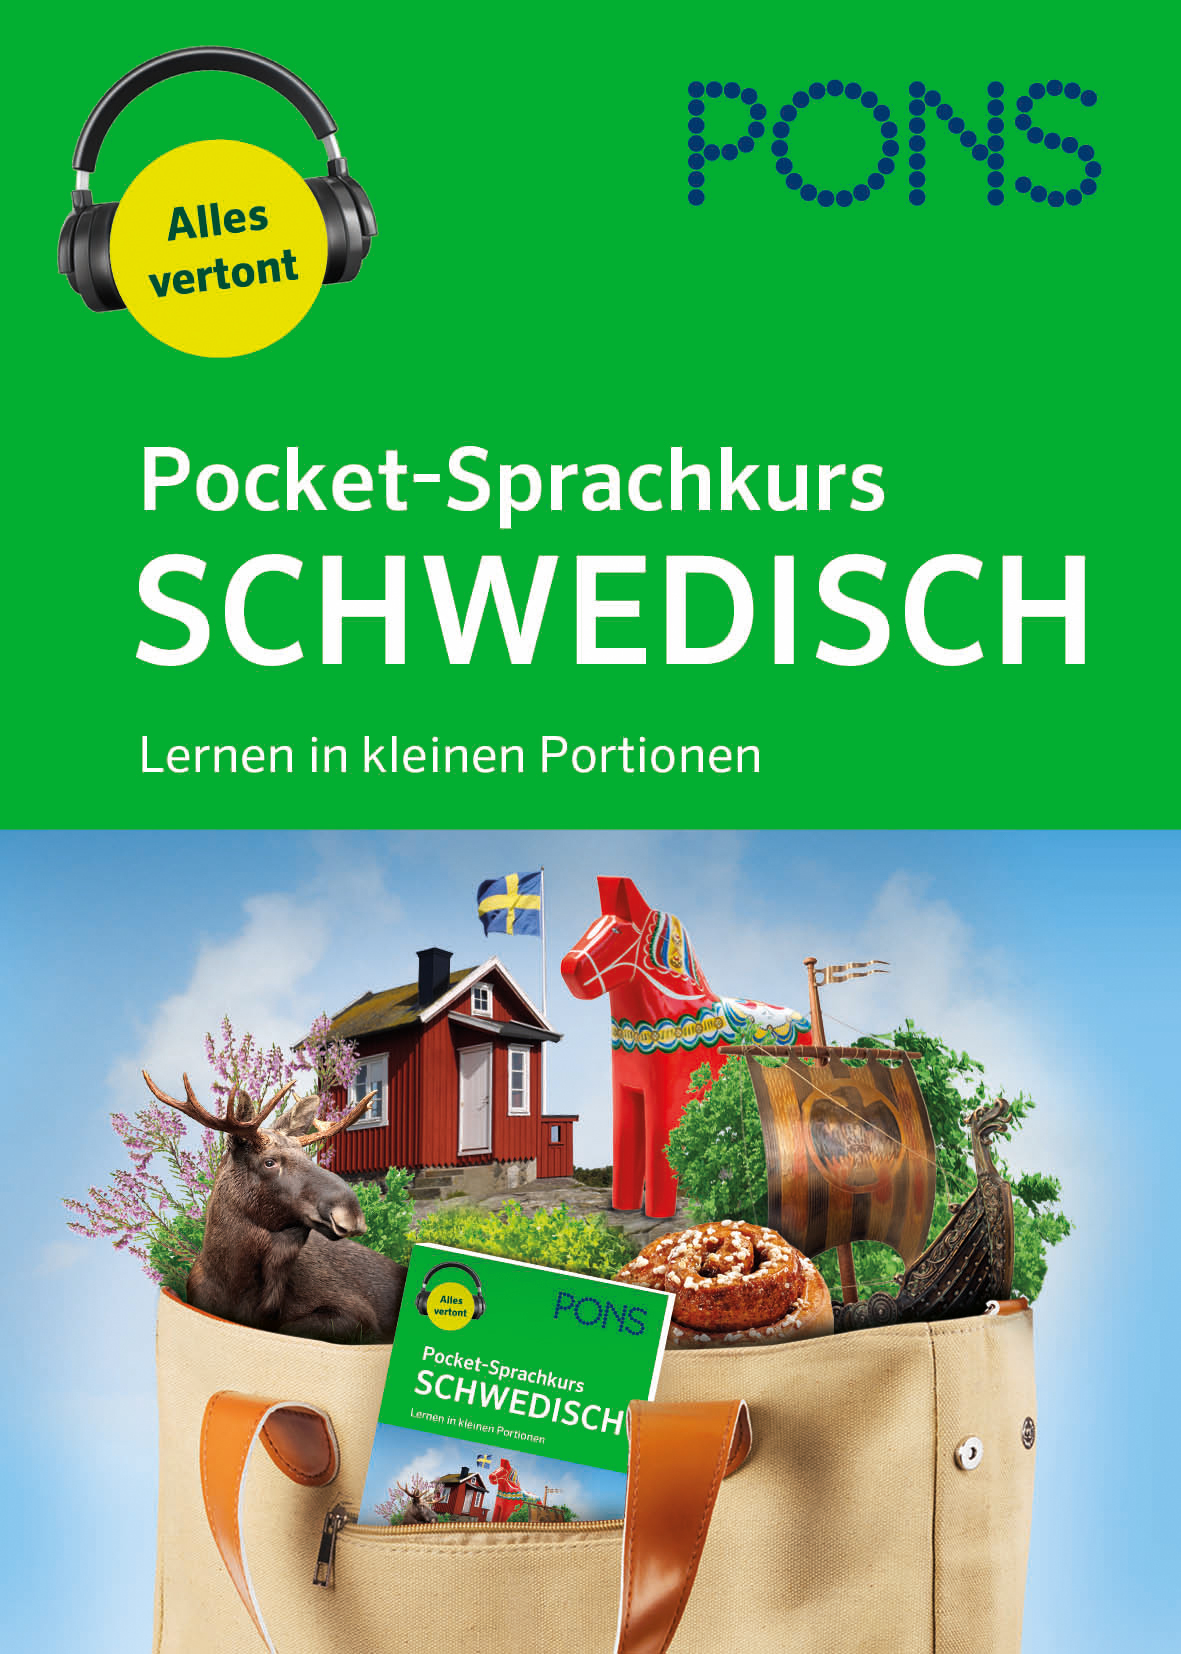 PONS Pocket-Sprachkurs Schwedisch